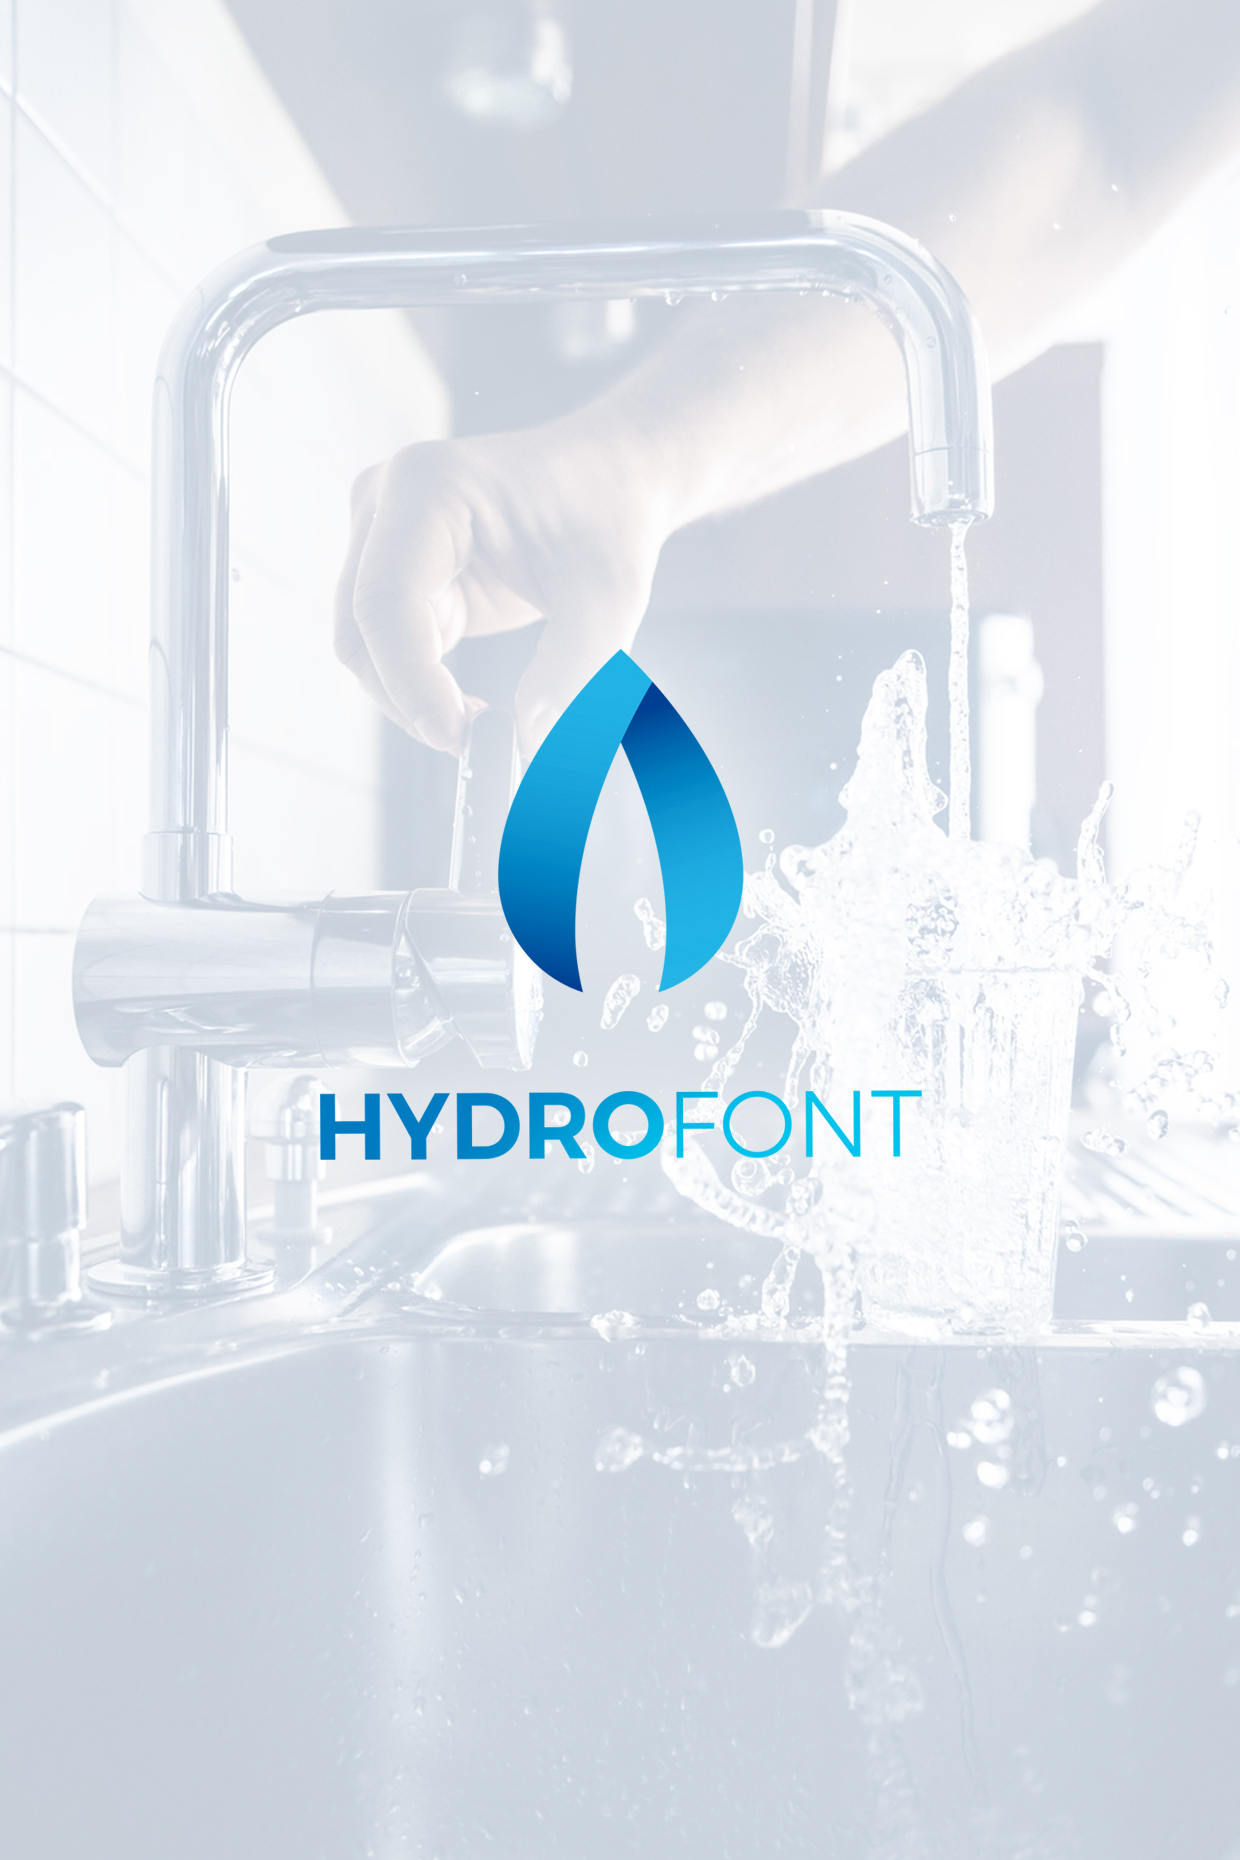 Diseño logo hydrofont